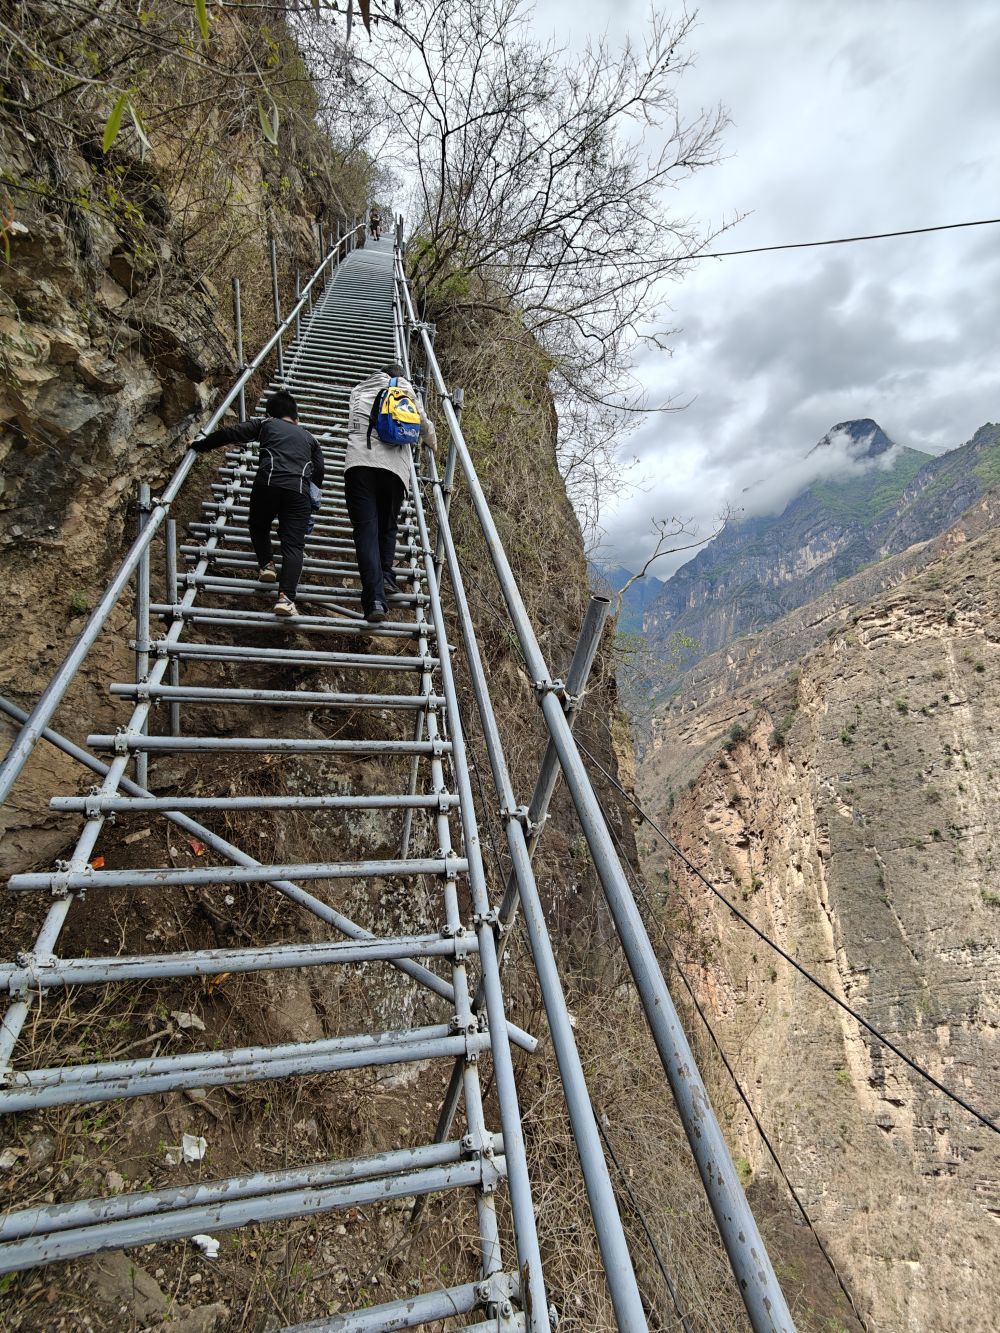 悬崖村钢梯上正在攀登的人。新华社记者 谢佼 摄